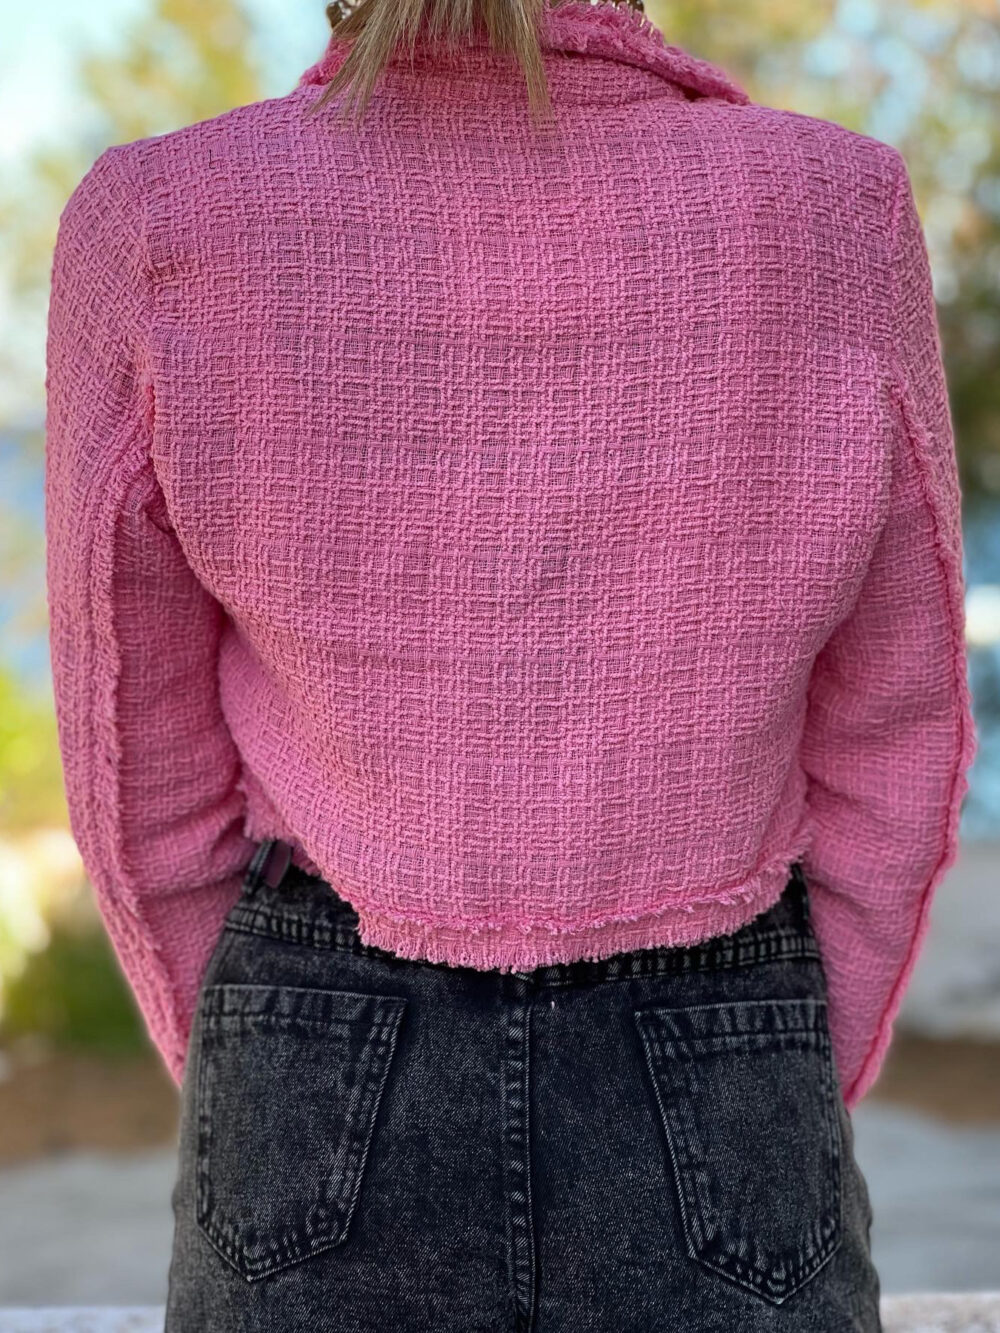 σακακι ροζ tweed με μακρυ μανικι